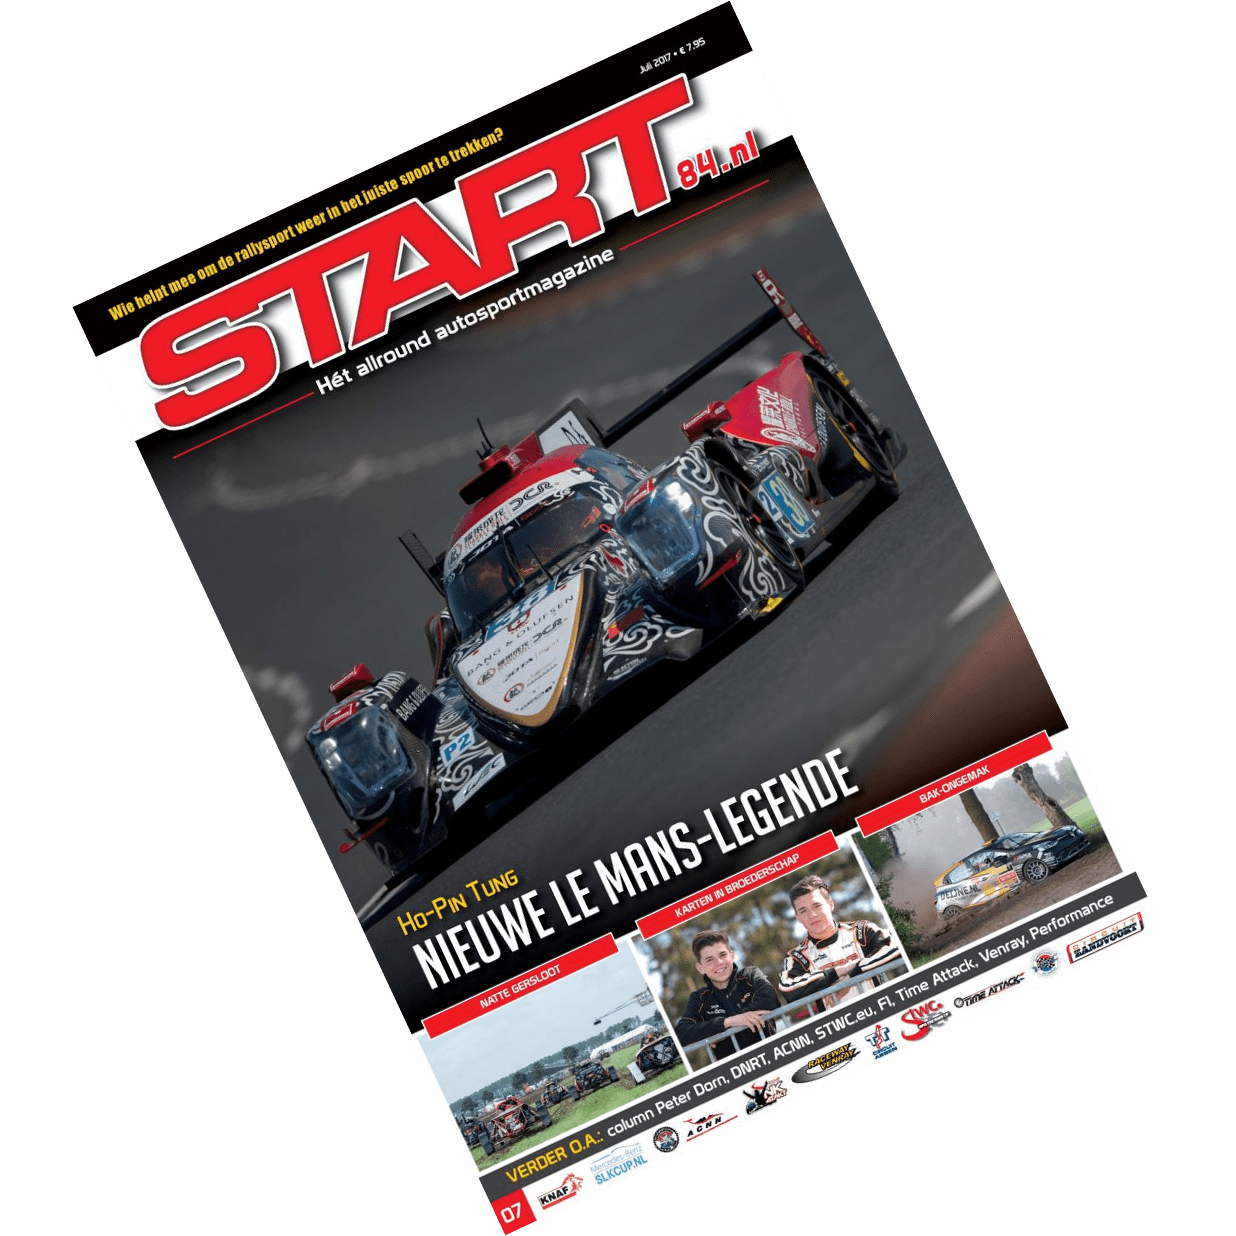 Cover van autosportmagazine Start 84 van juli 2017 met daarin bijdragen van Ralph Stoové